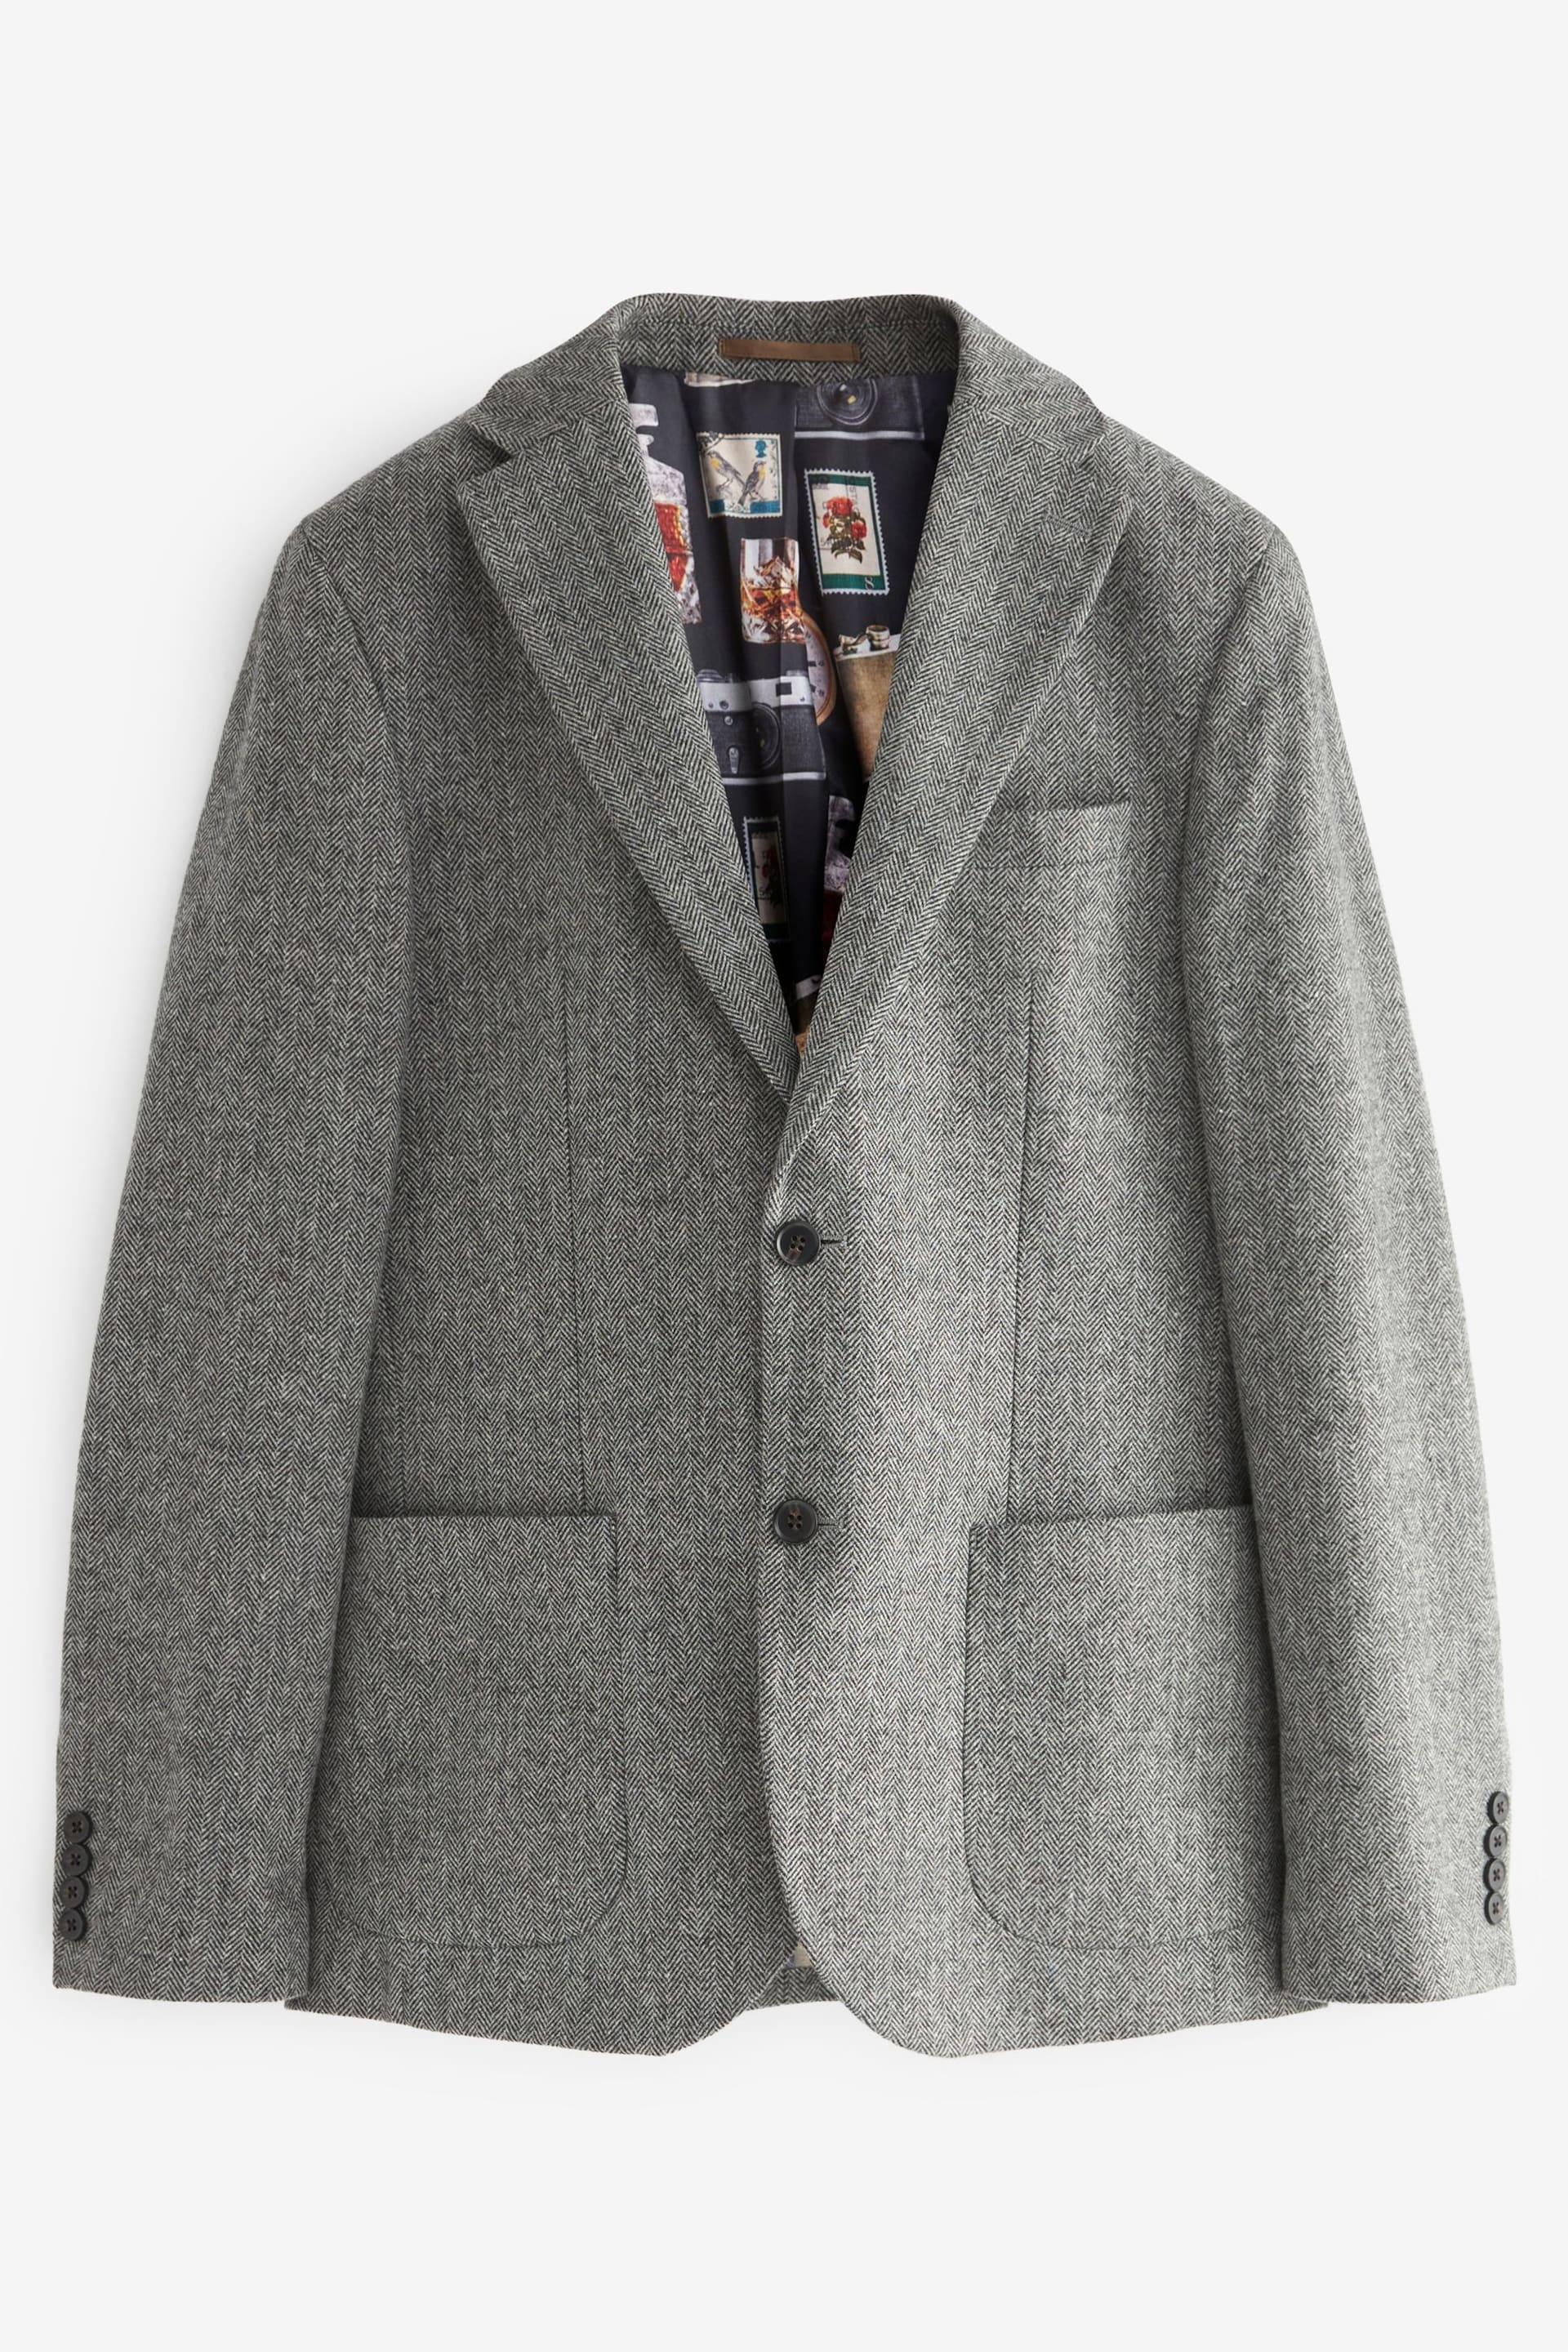 Grey Slim Fit Nova Fides Wool Blend Herringbone Suit Jacket - Image 7 of 12